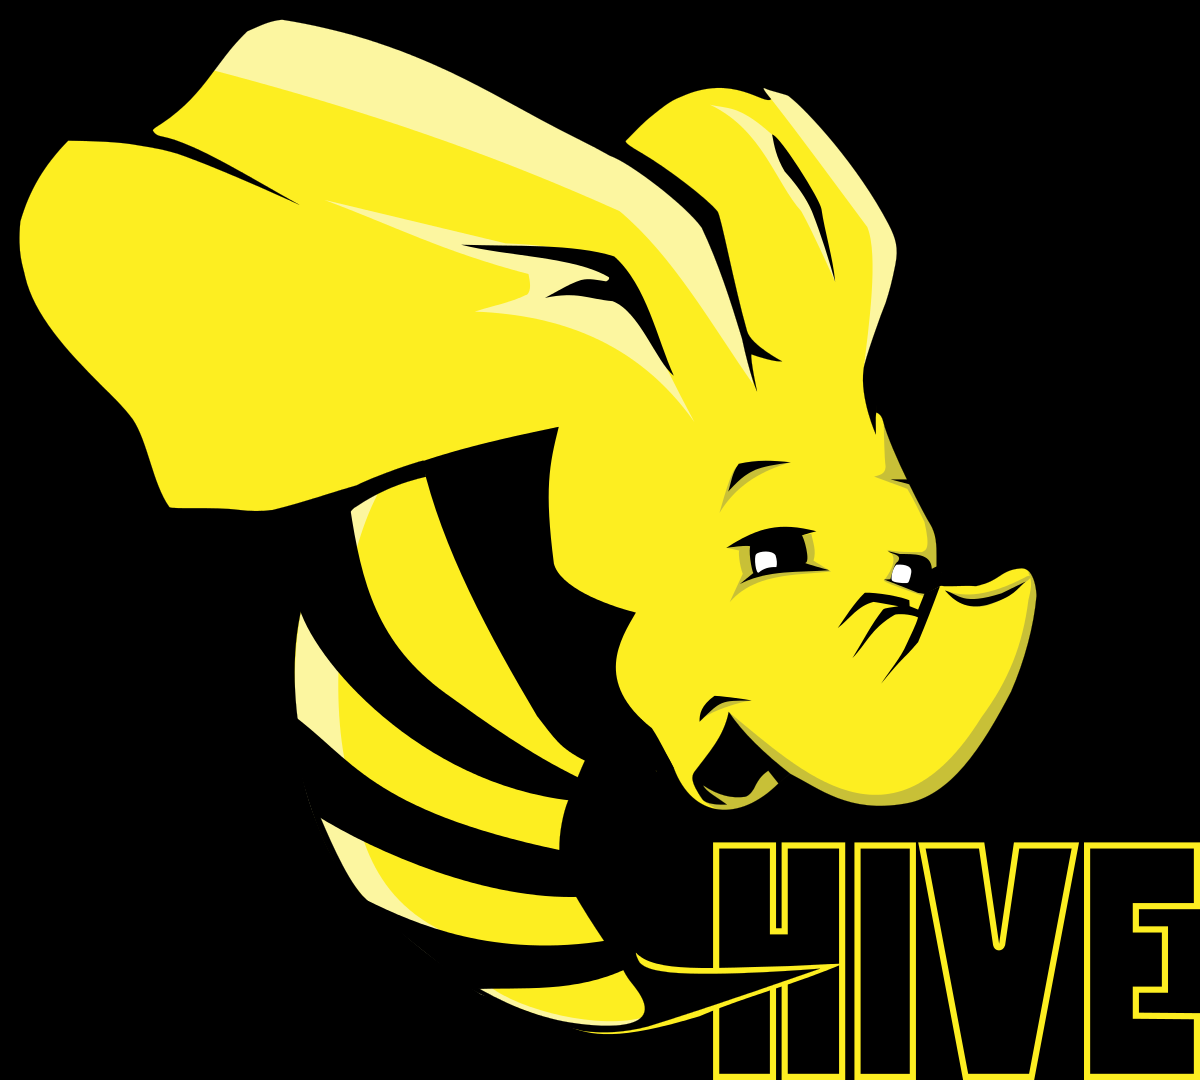 Hive. Hive логотип. Hadoop Hive. Apache Hive. Hadoop Hive иконка.